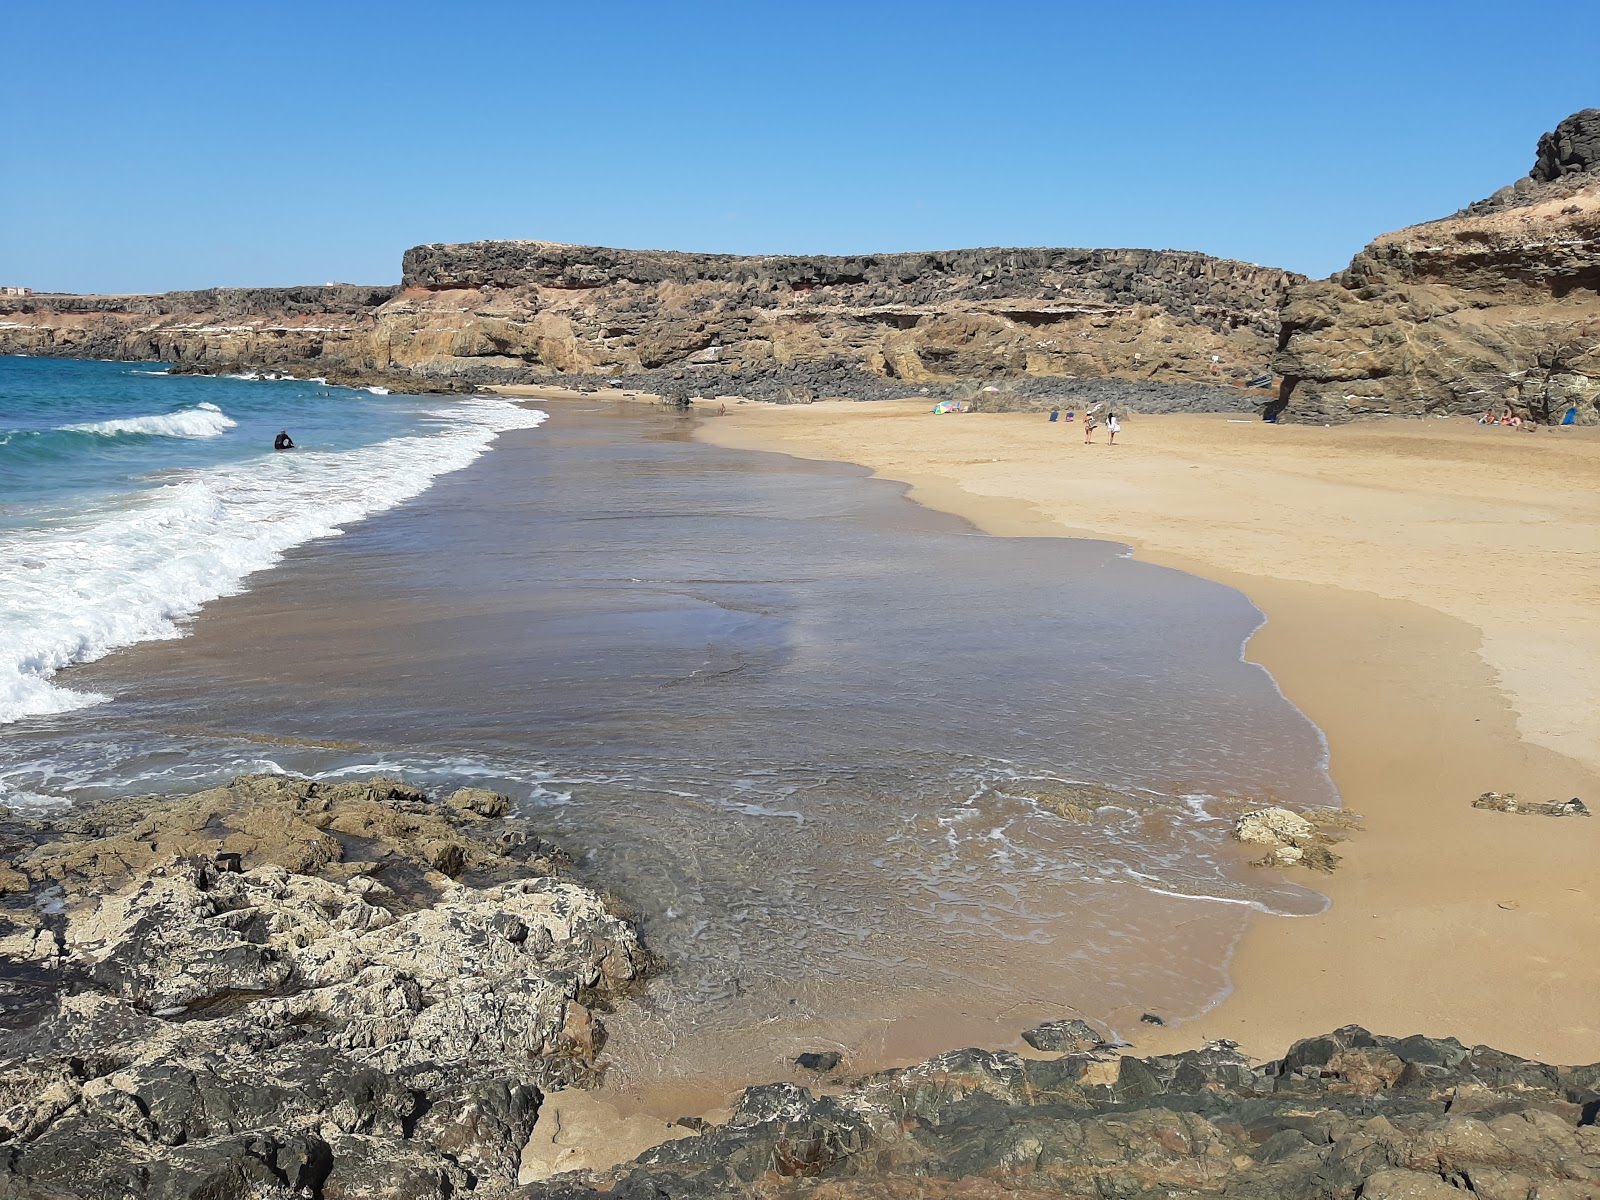 Fotografie cu Playa Tebeto cu o suprafață de nisip strălucitor